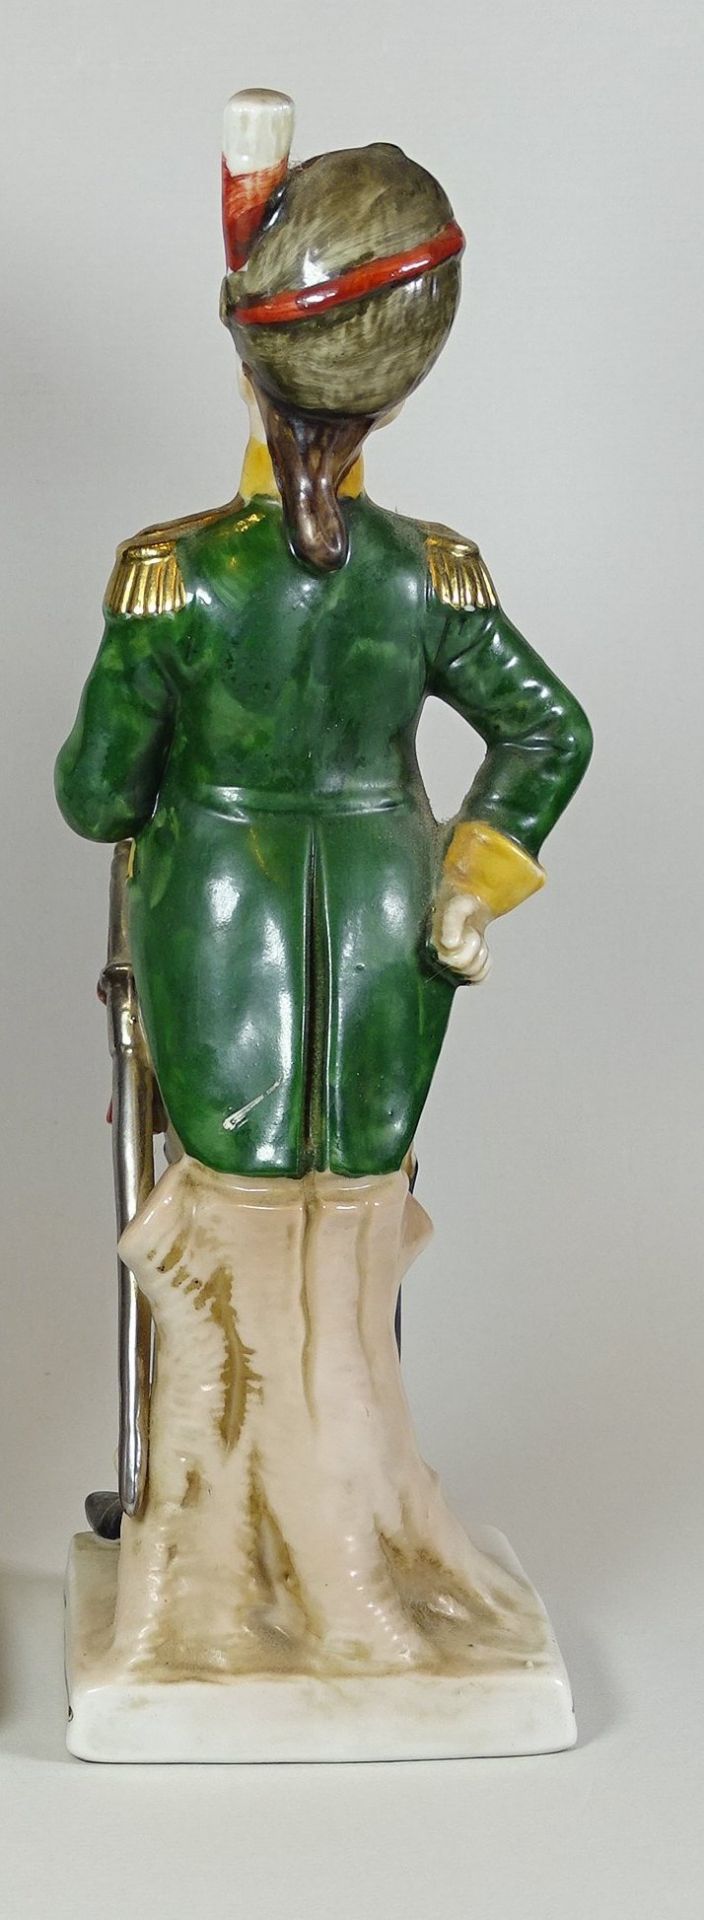 Offizier Figur mit Pfeife,ungemarkt, H. 25cm,Alters- und Gebrauchsspuren - Bild 4 aus 4